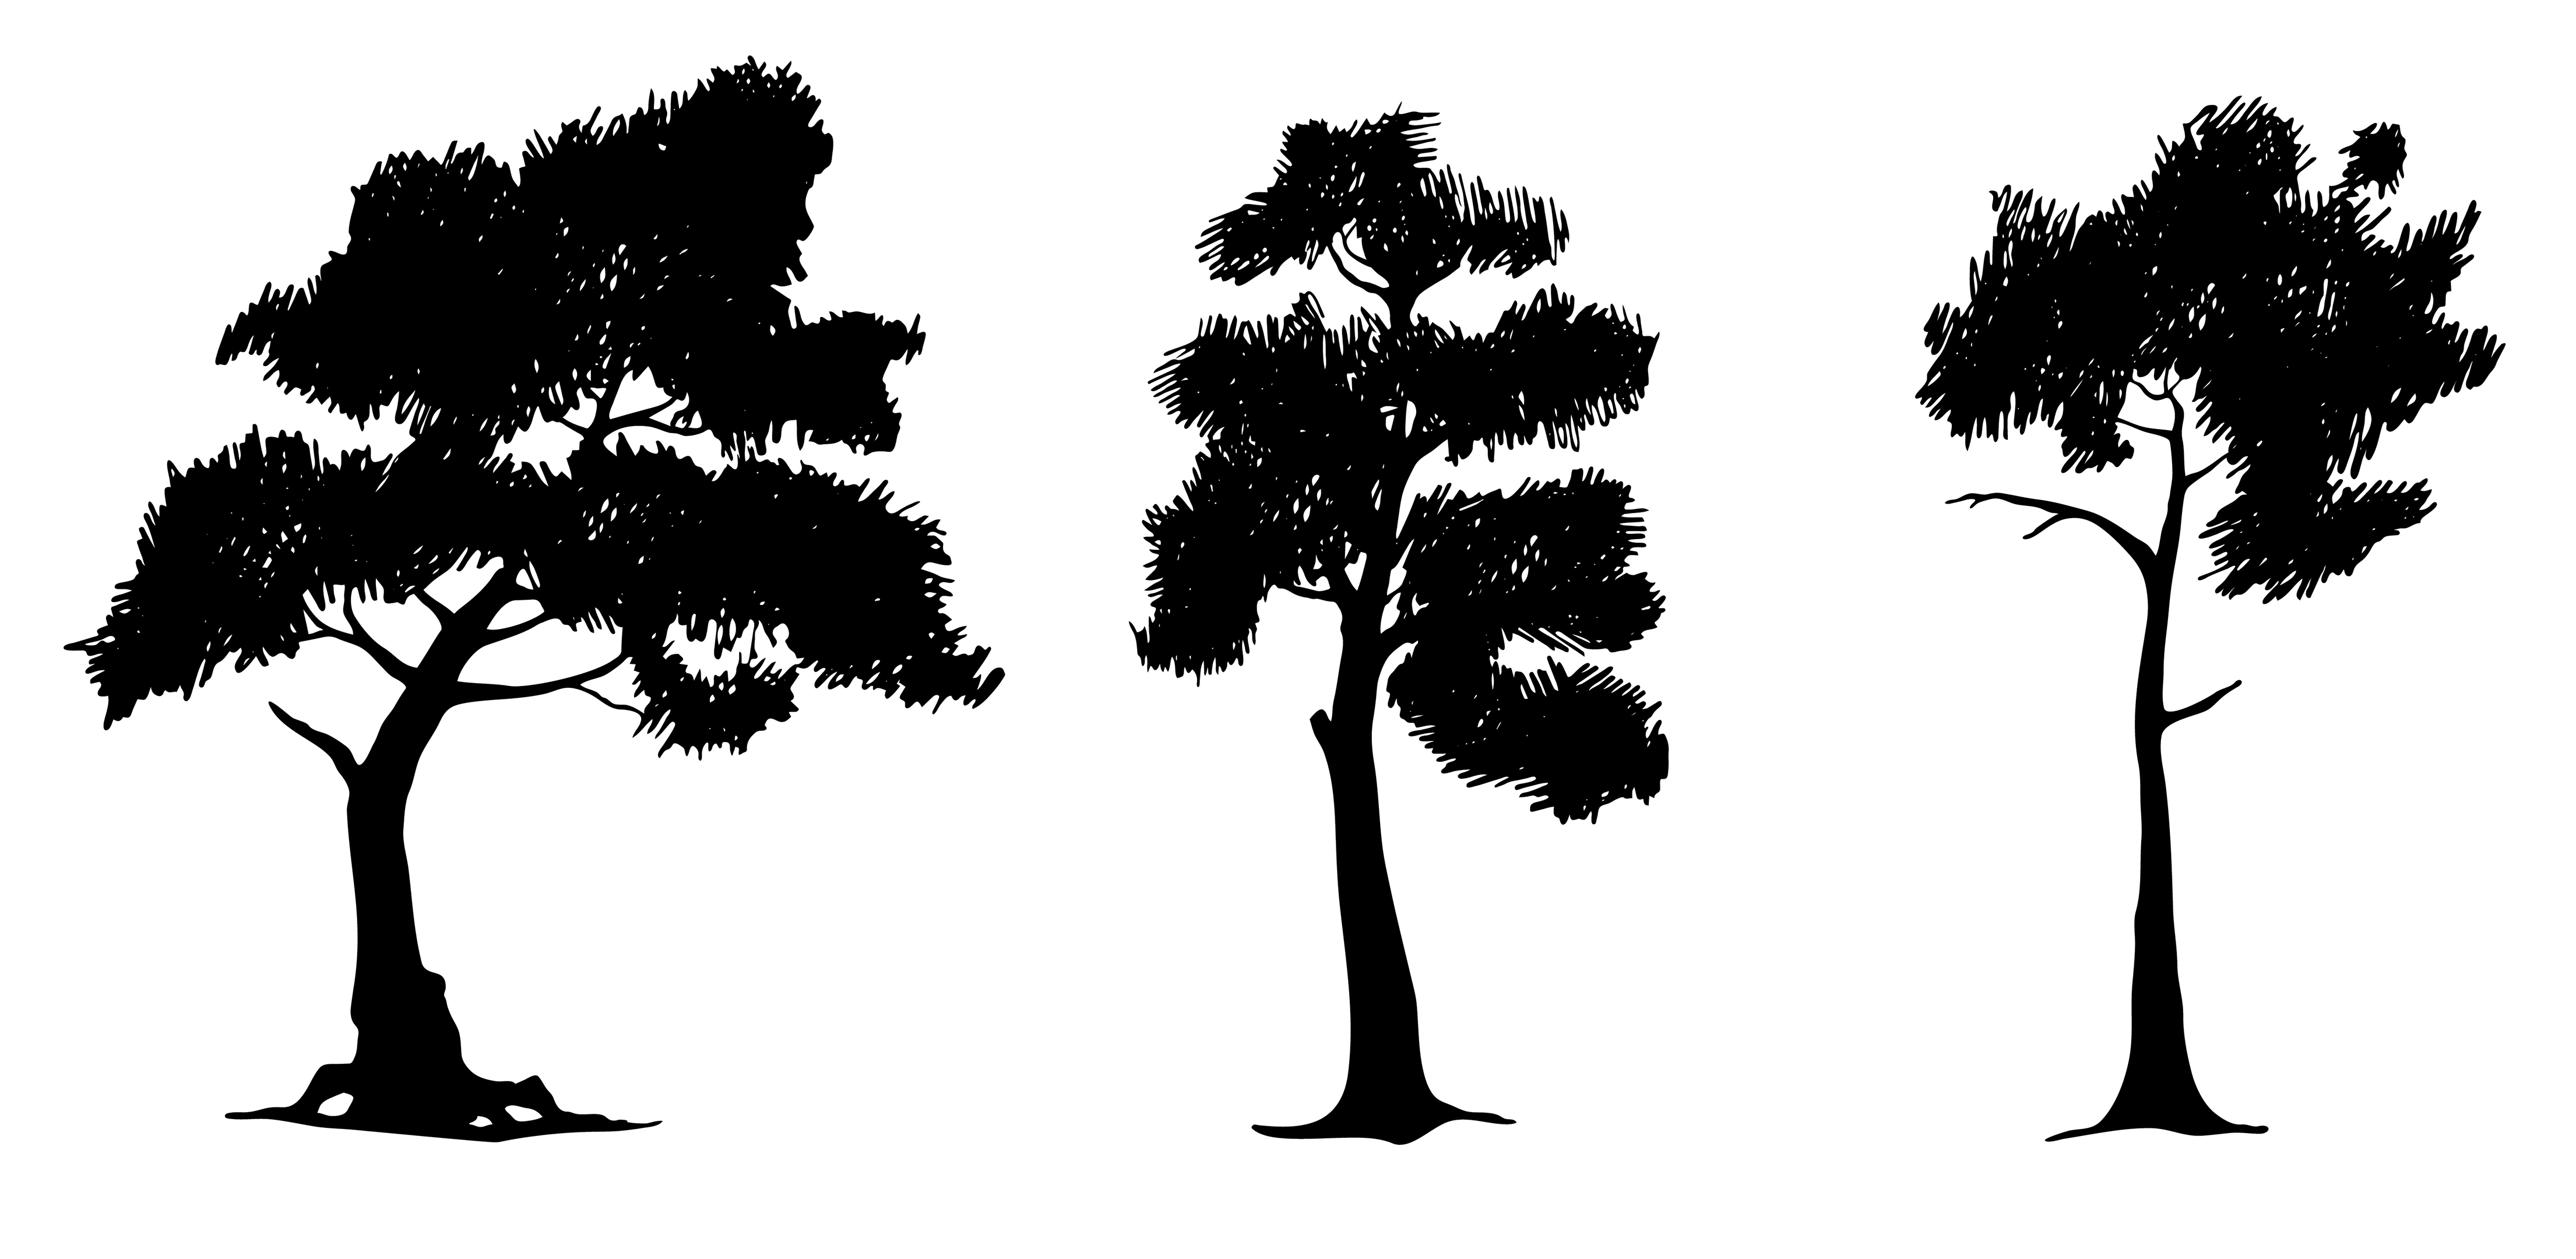 nuska » Pine tree illustration